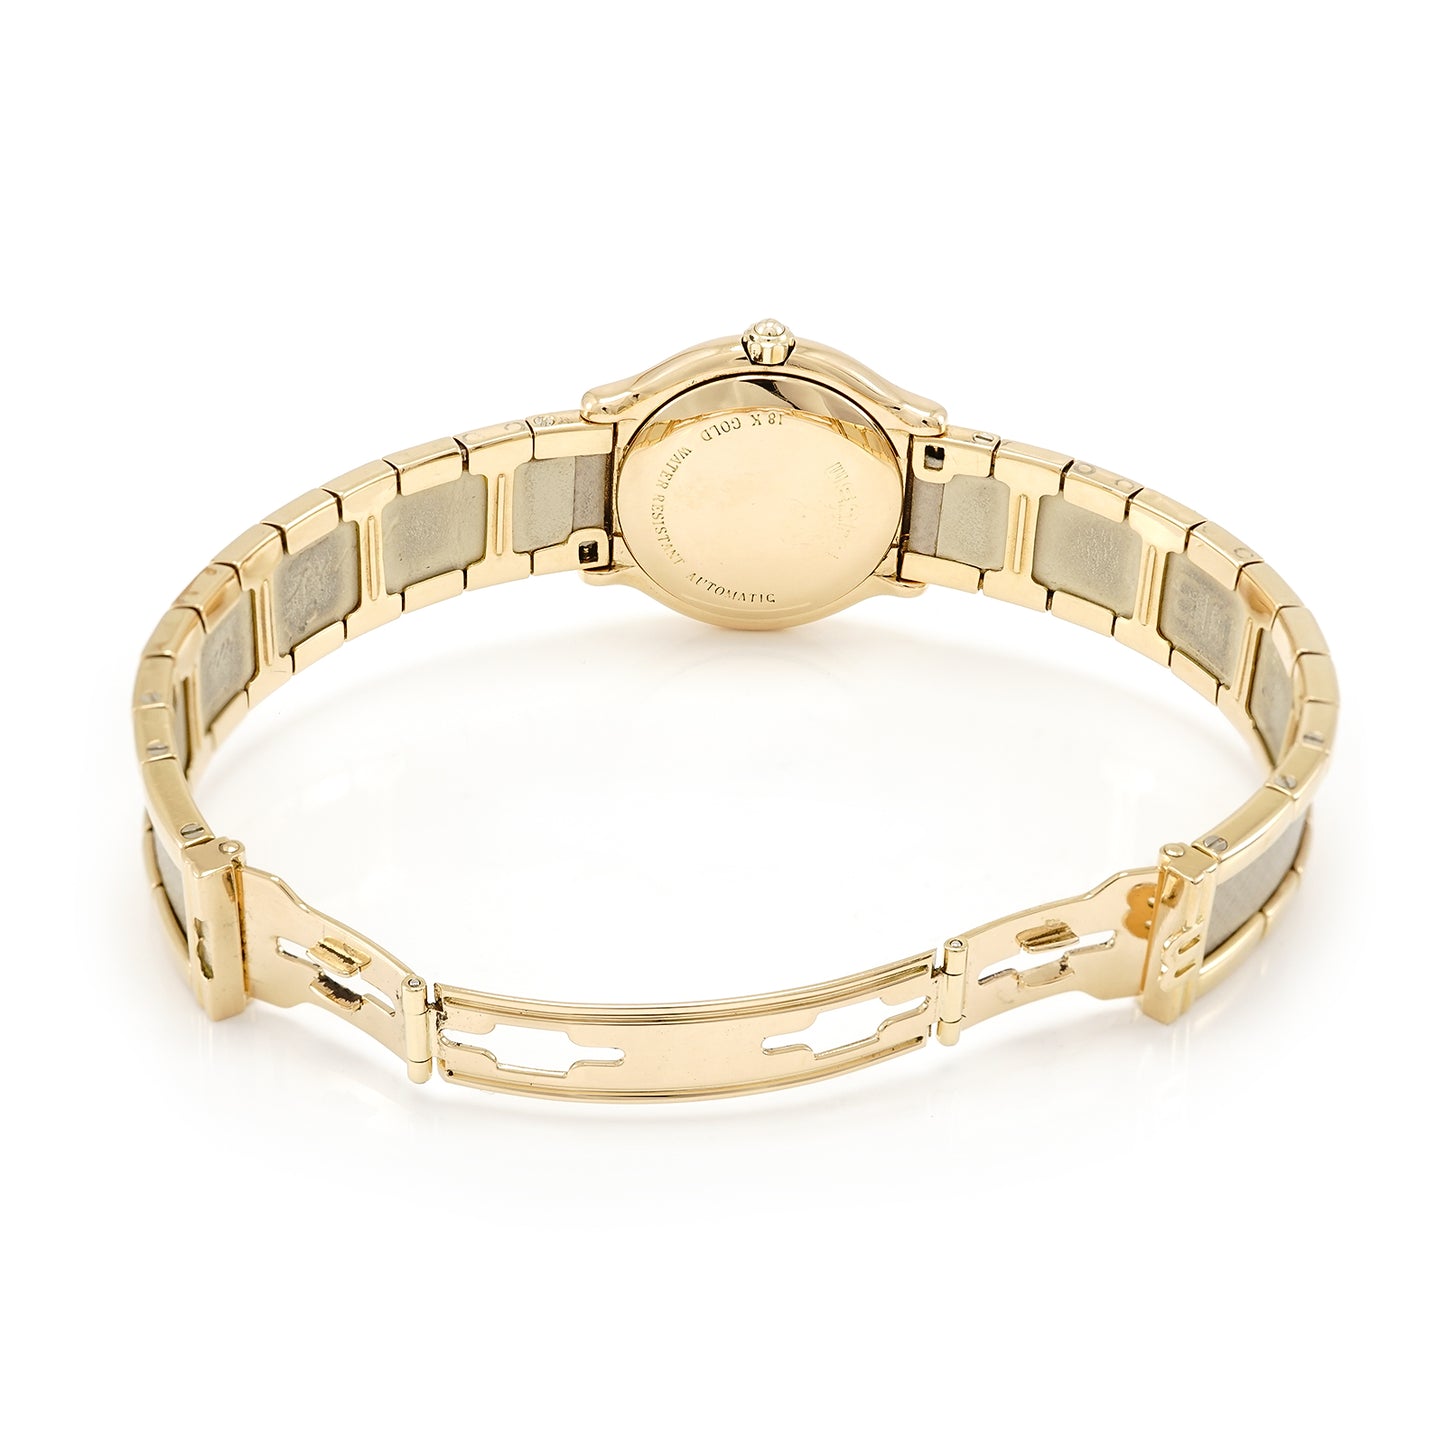 elegant women's watch WEMPE le bracelet gold 750 18K wristwatch automatic date